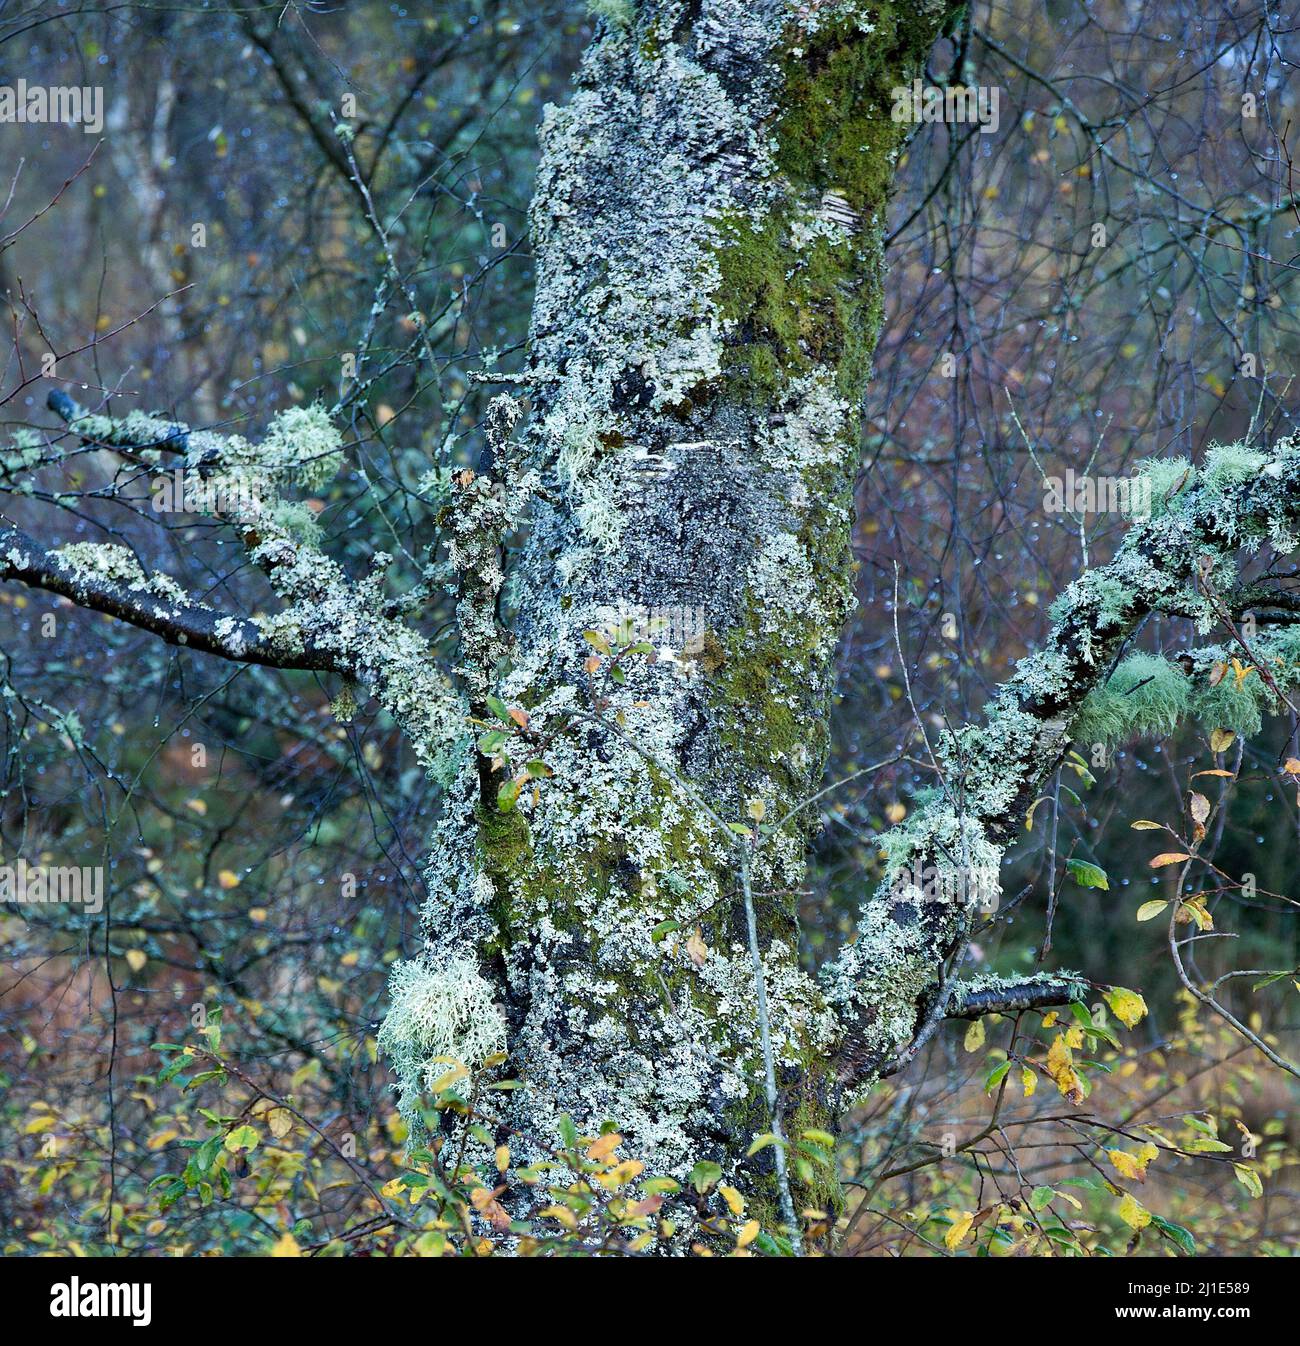 Parmelia Sulcata Shield, Lichen encrusted old tree Gwydyr Forest at Snowdonia National Park Gwynedd North Wales UK Stock Photo